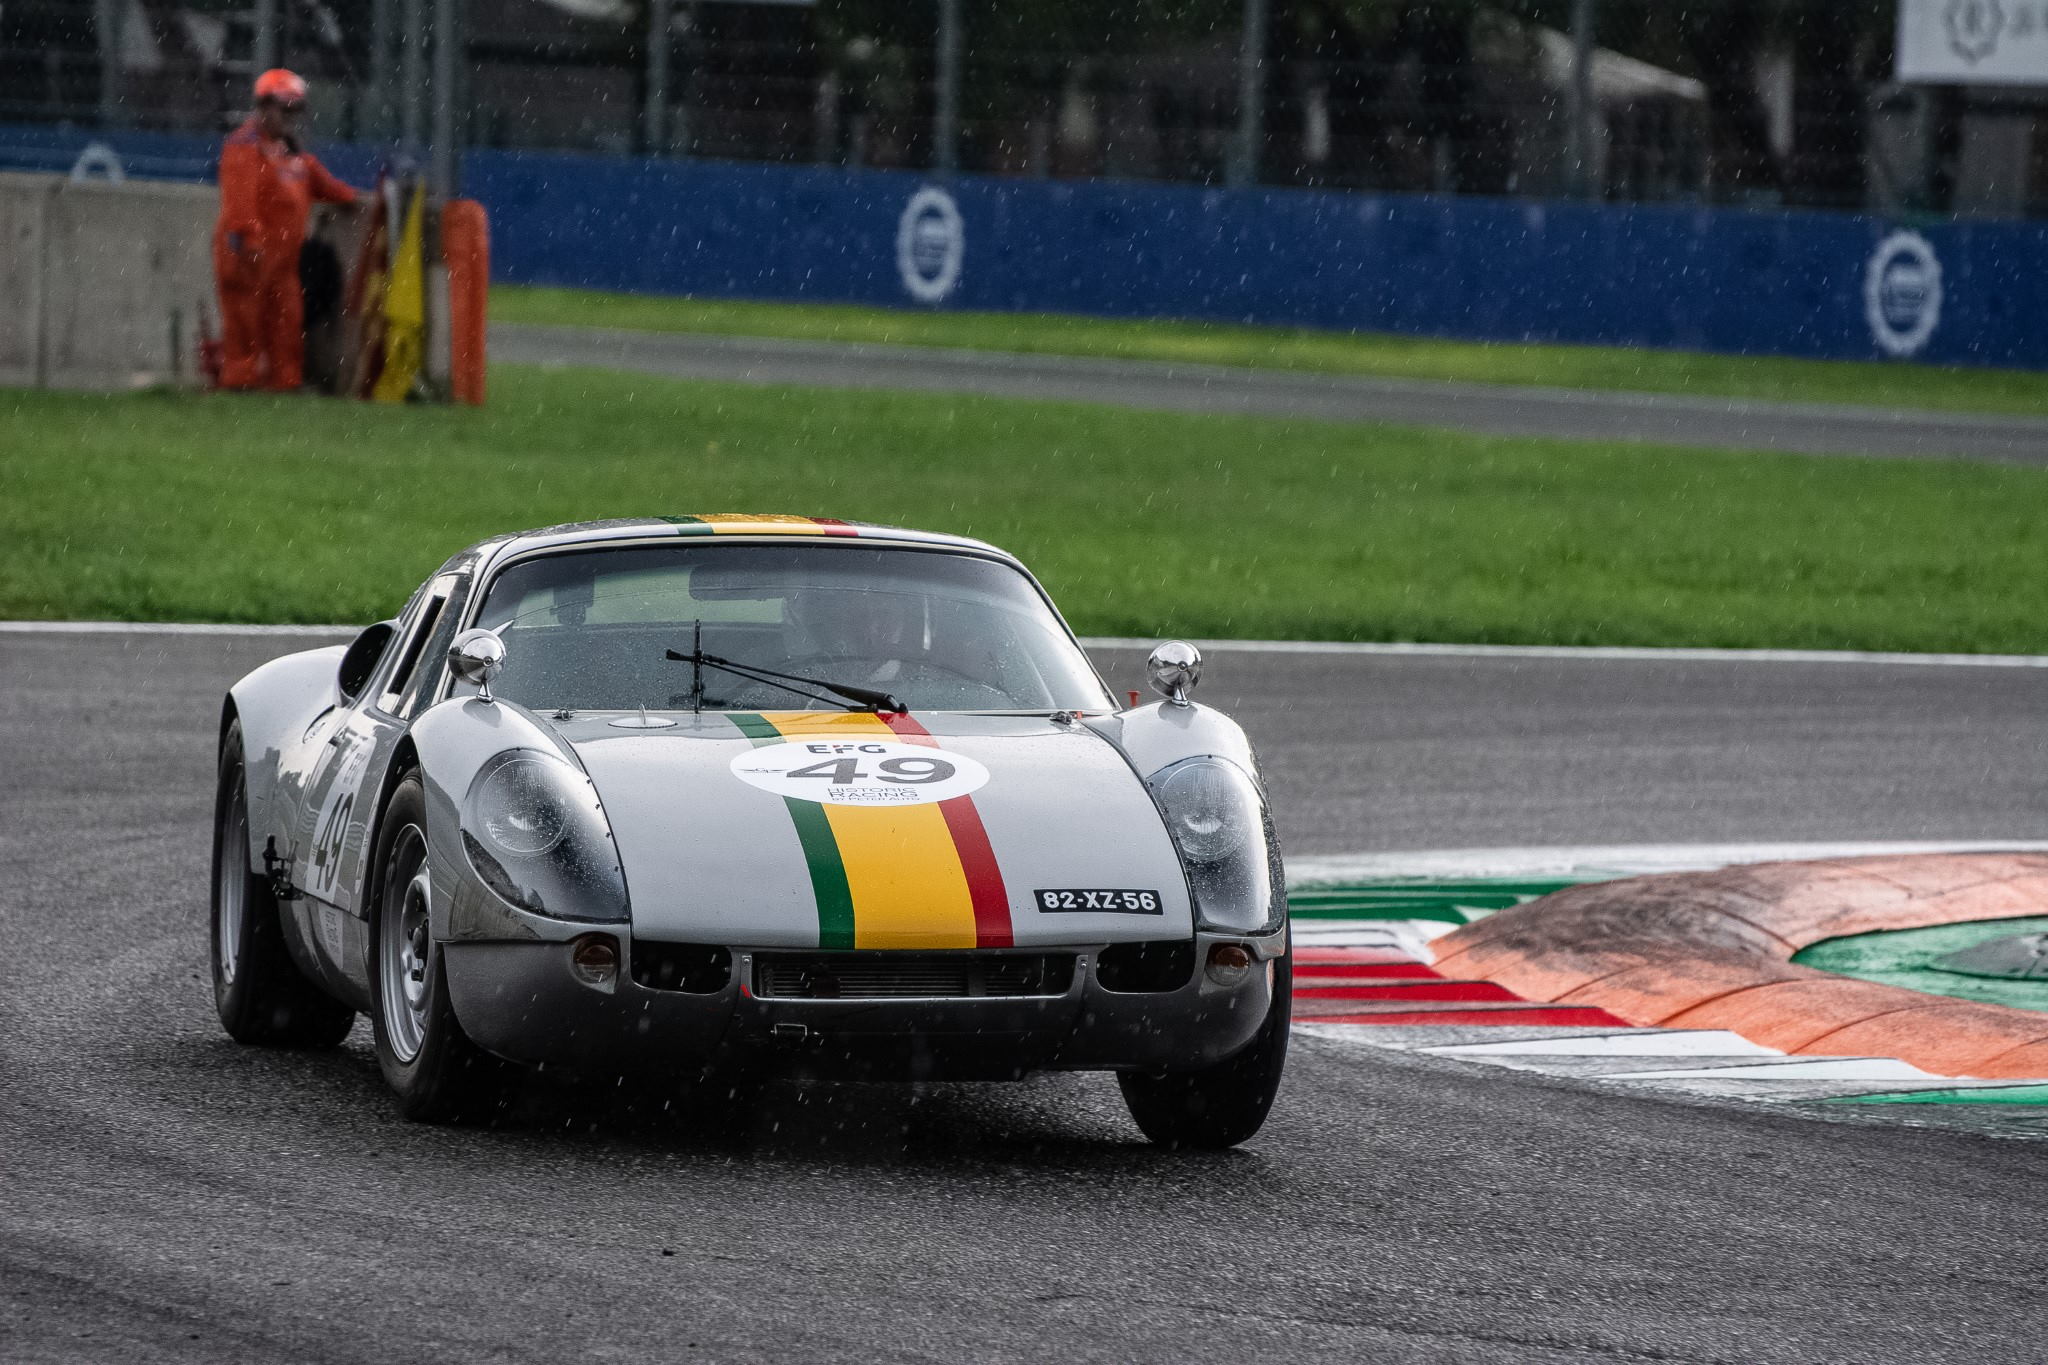 Racetrackstudio_Monza_Historic_Porsche_904_GTS.jpg